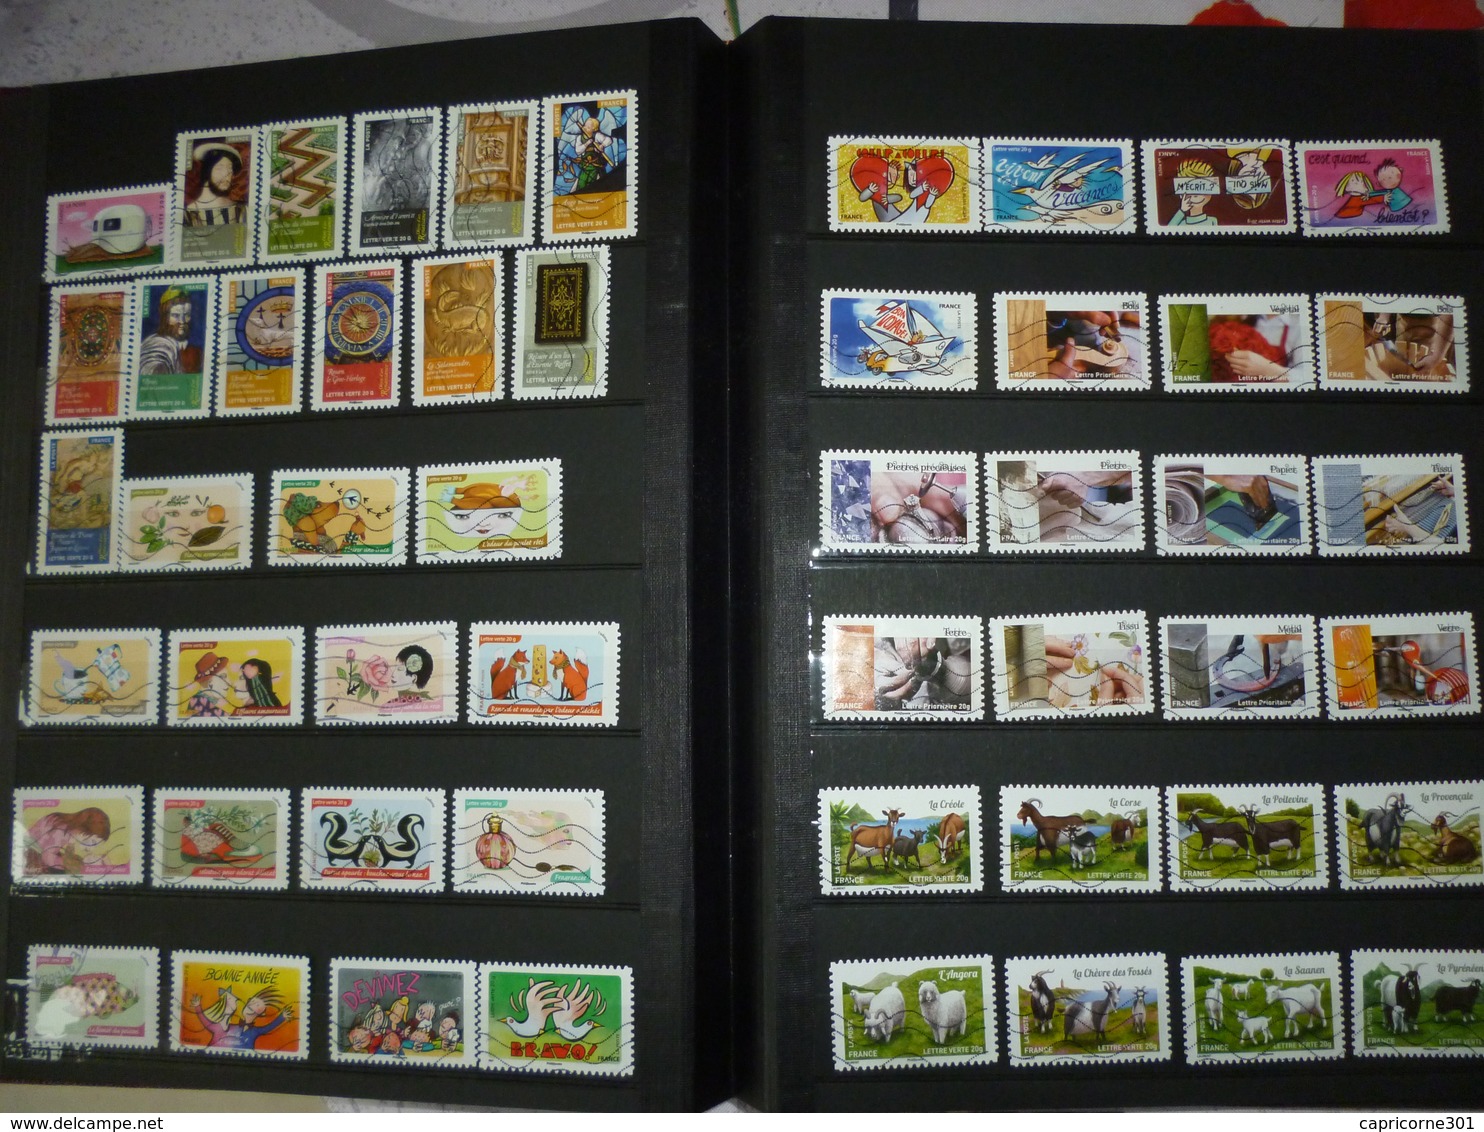 Oblitéré de France en album de 16 pages. + de 700 timbres de très belle qualité.